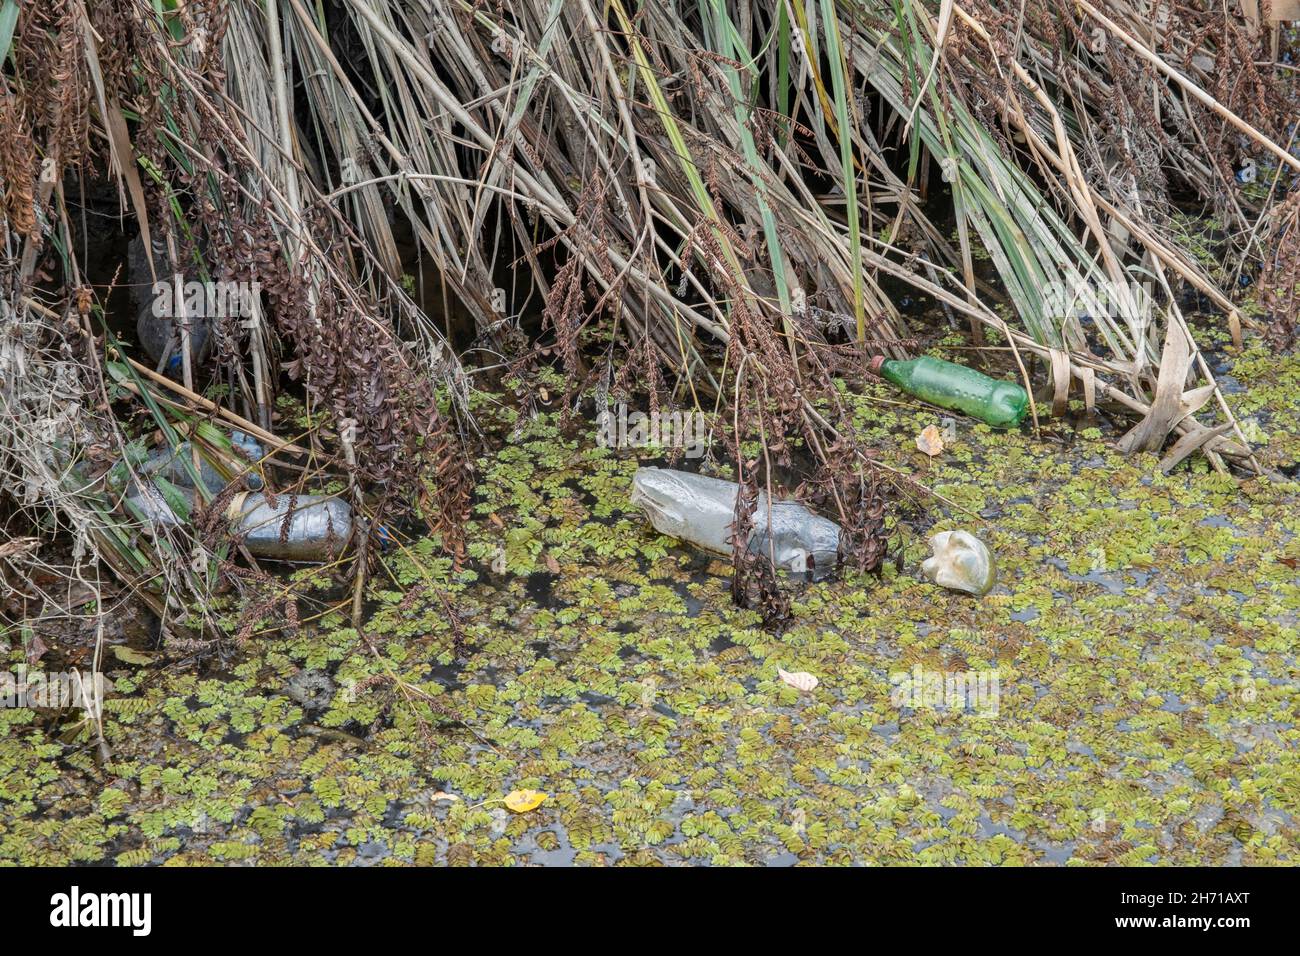 Plastikflaschen schwimmen auf dem schwimmenden Wassermoos (Salvinia natans) im Küstengebiet im Donaudelta. Verschmutzung durch Plastik. Stockfoto